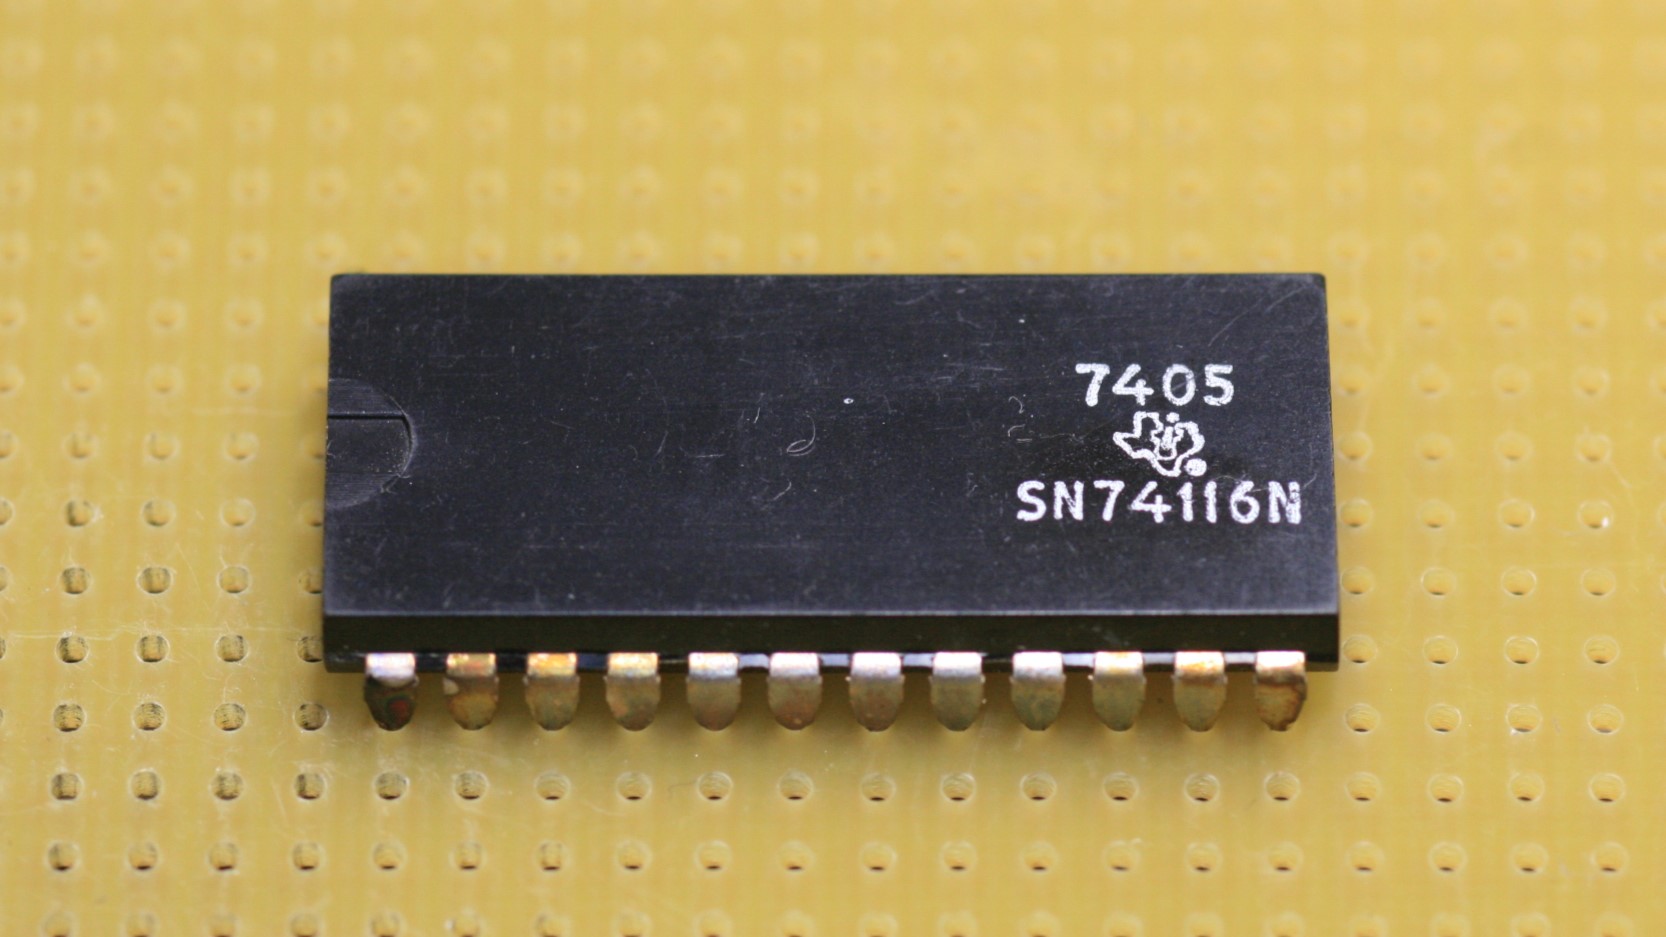 SN74116